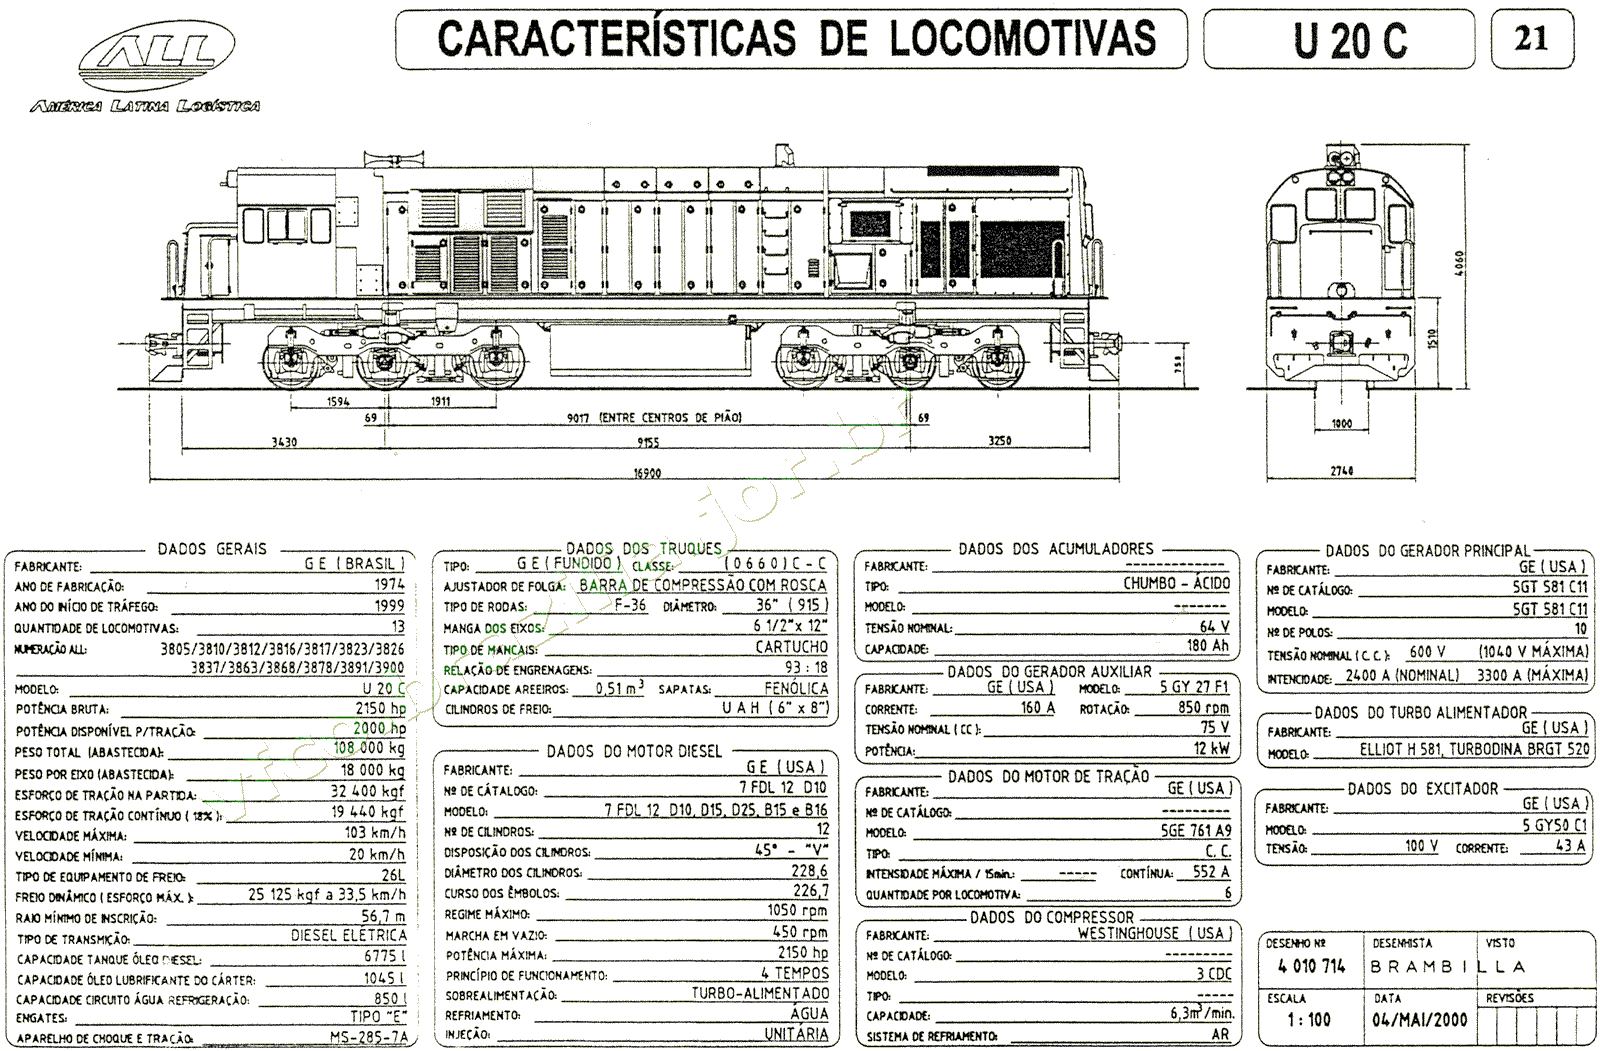 Desenho e características da Locomotiva U20C da ferrovia ALL